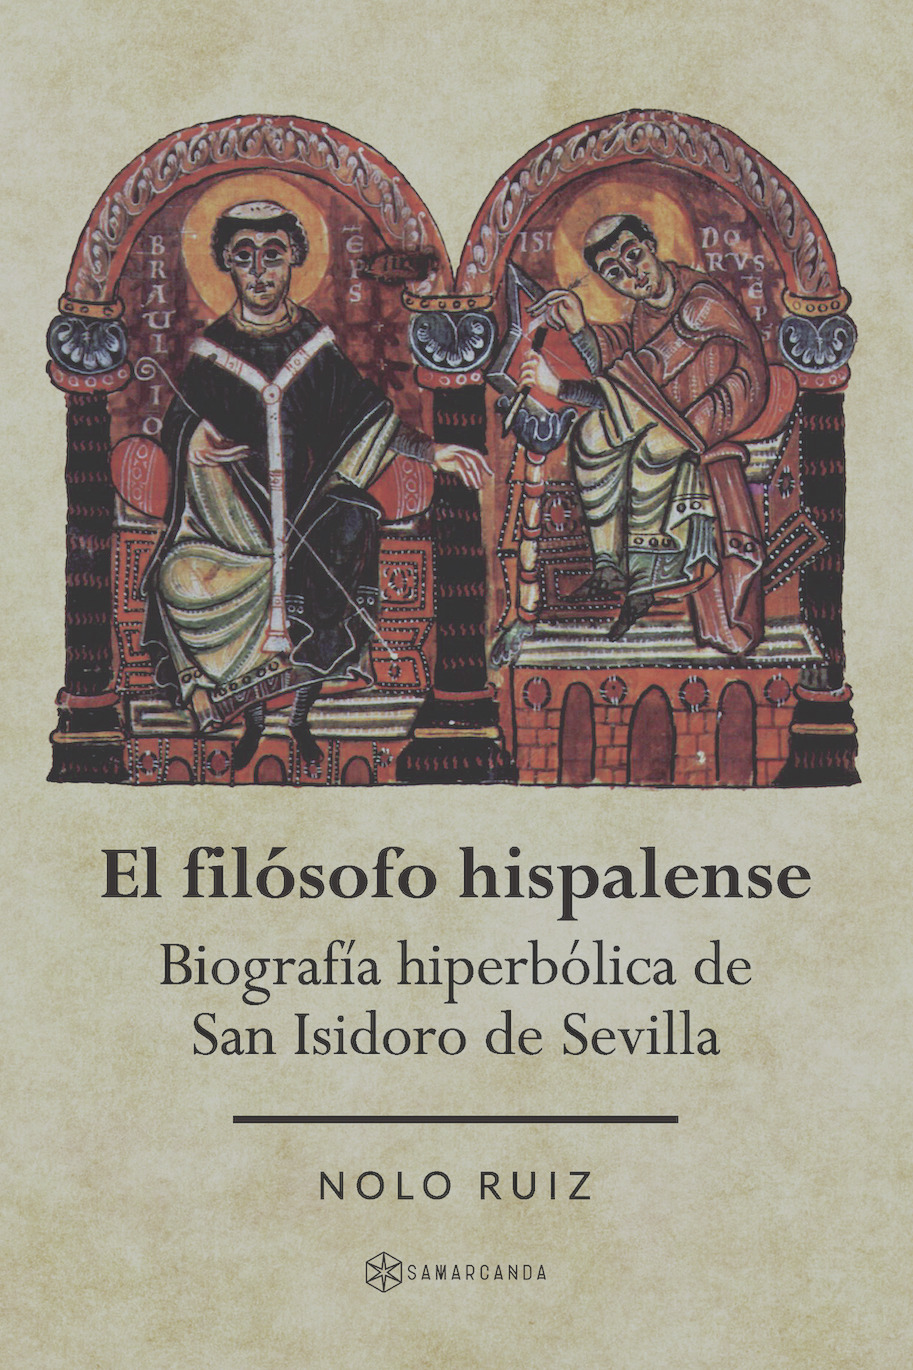 El filósofo hispalense. Biografía hiperbólica de San Isidoro de Sevilla